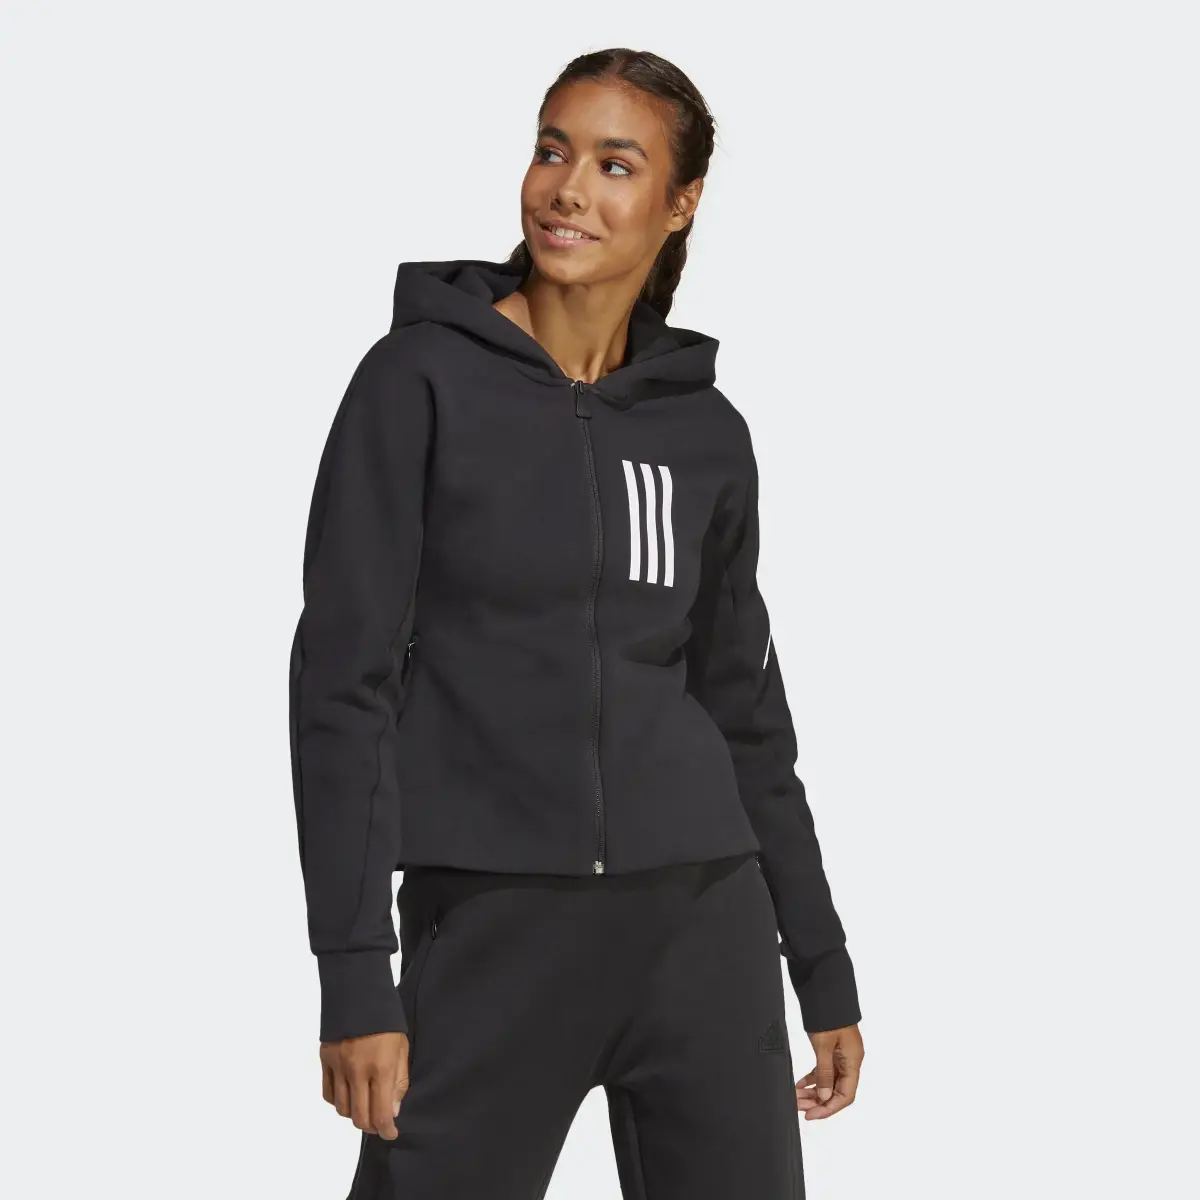 Adidas Mission Victory Slim Fit Full-Zip Hoodie. 2